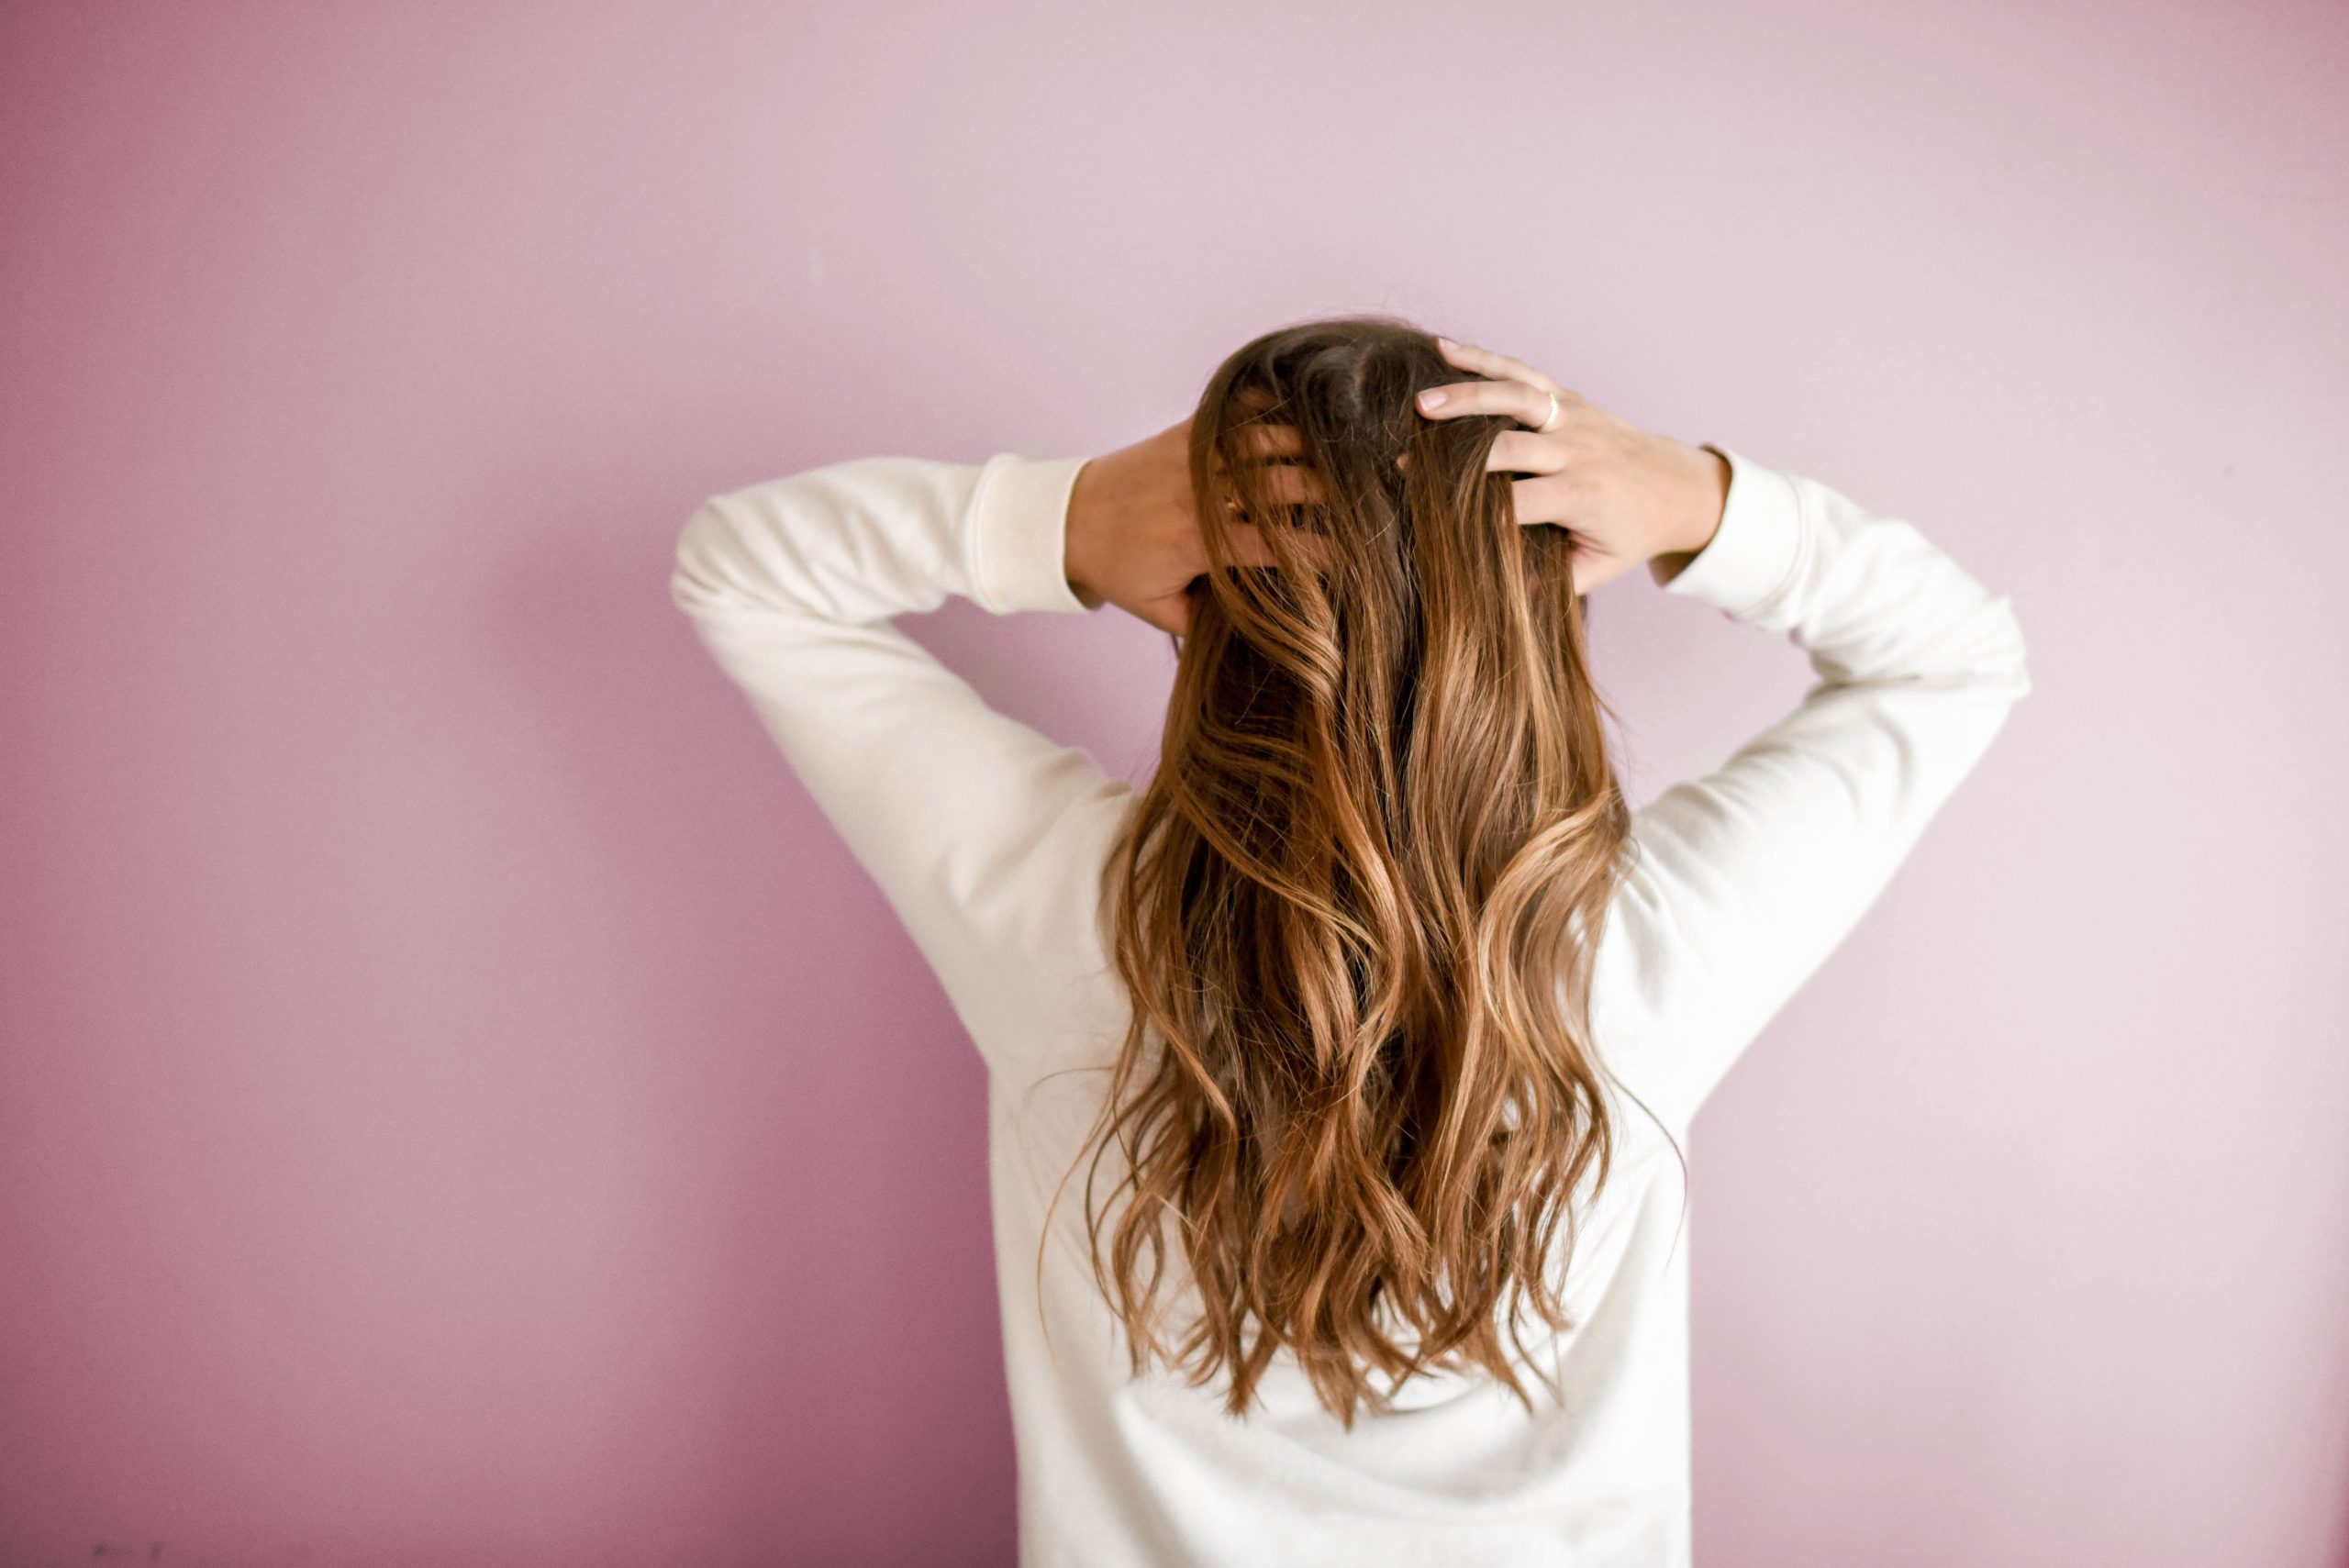  बाल बढ़ाने के मंत्र: बालों के लिए 5 सर्वोत्तम मंत्रों के साथ मार्गदर्शन करें